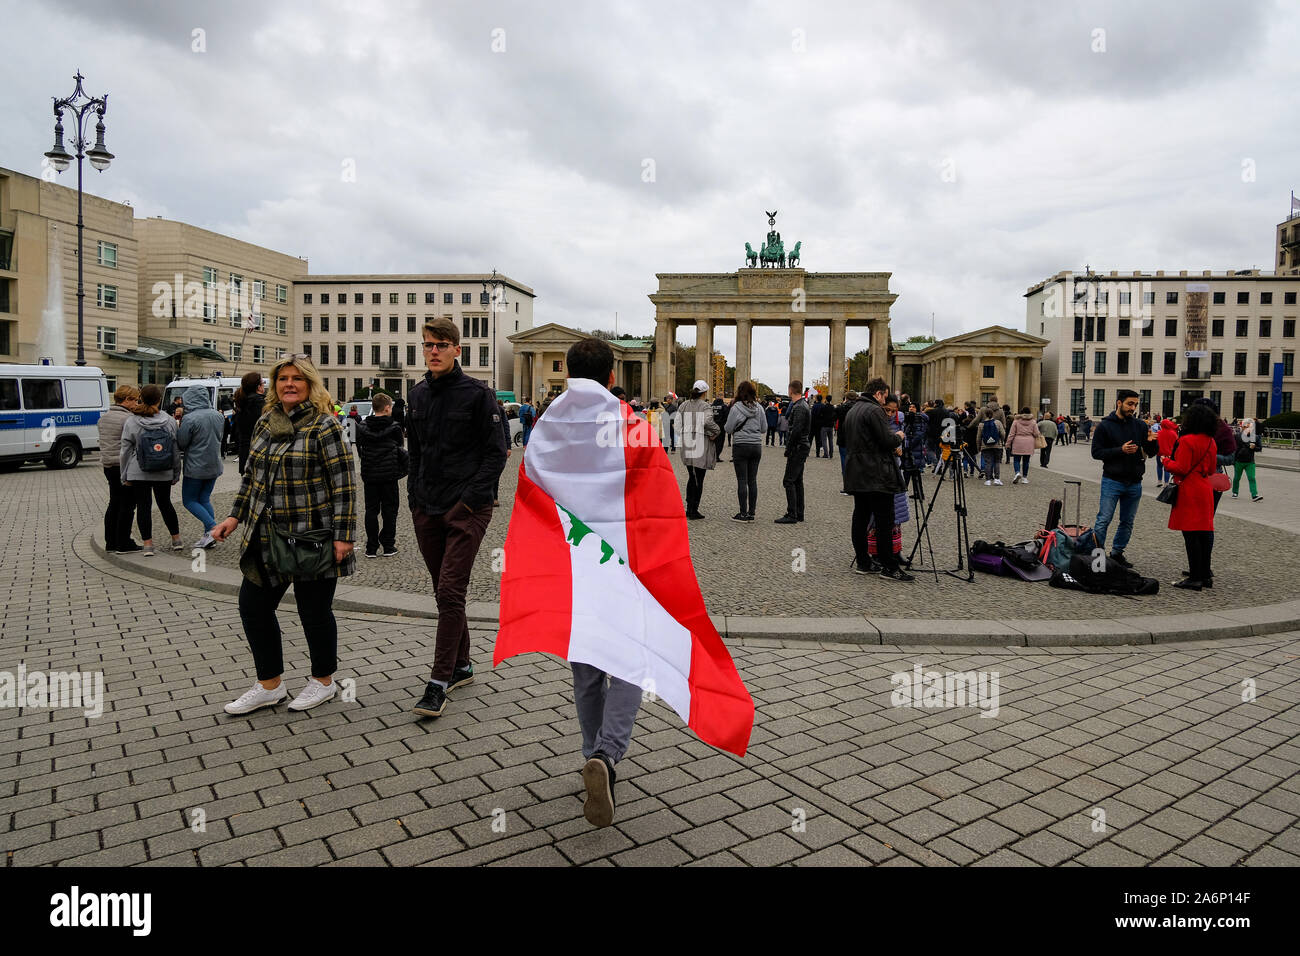 Libanesische Volk Protest in Deutschland, parisier Platz, Brandenburger Tor Platz Stockfoto